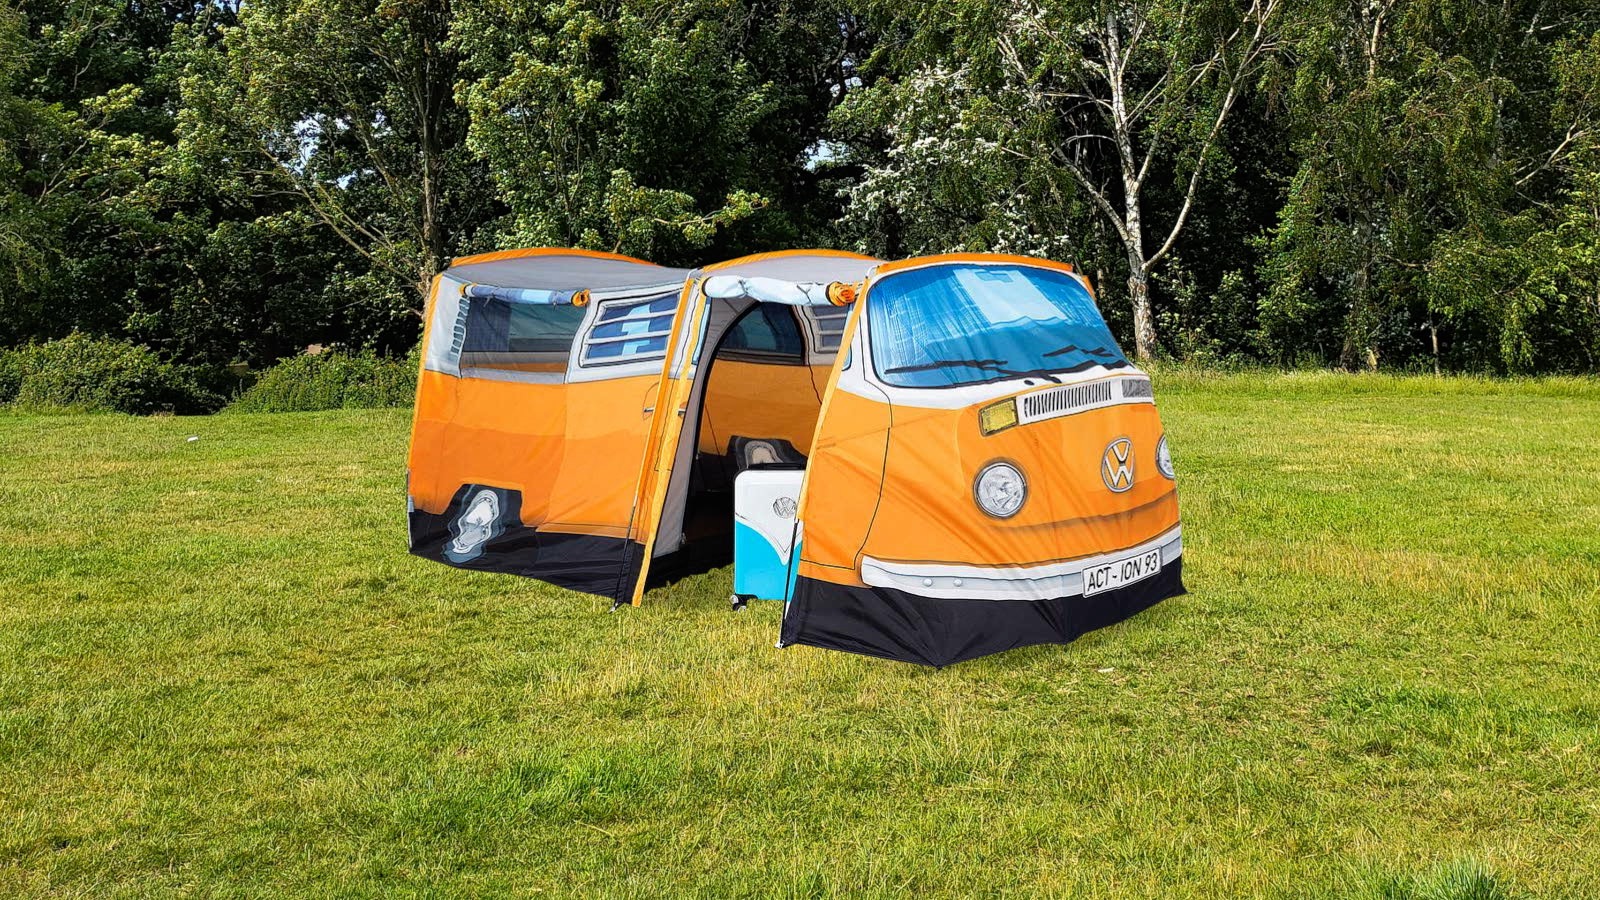 speelplaats willekeurig Umeki Action stunt met betaalbare festivaltent die op Volkswagen-bus lijkt